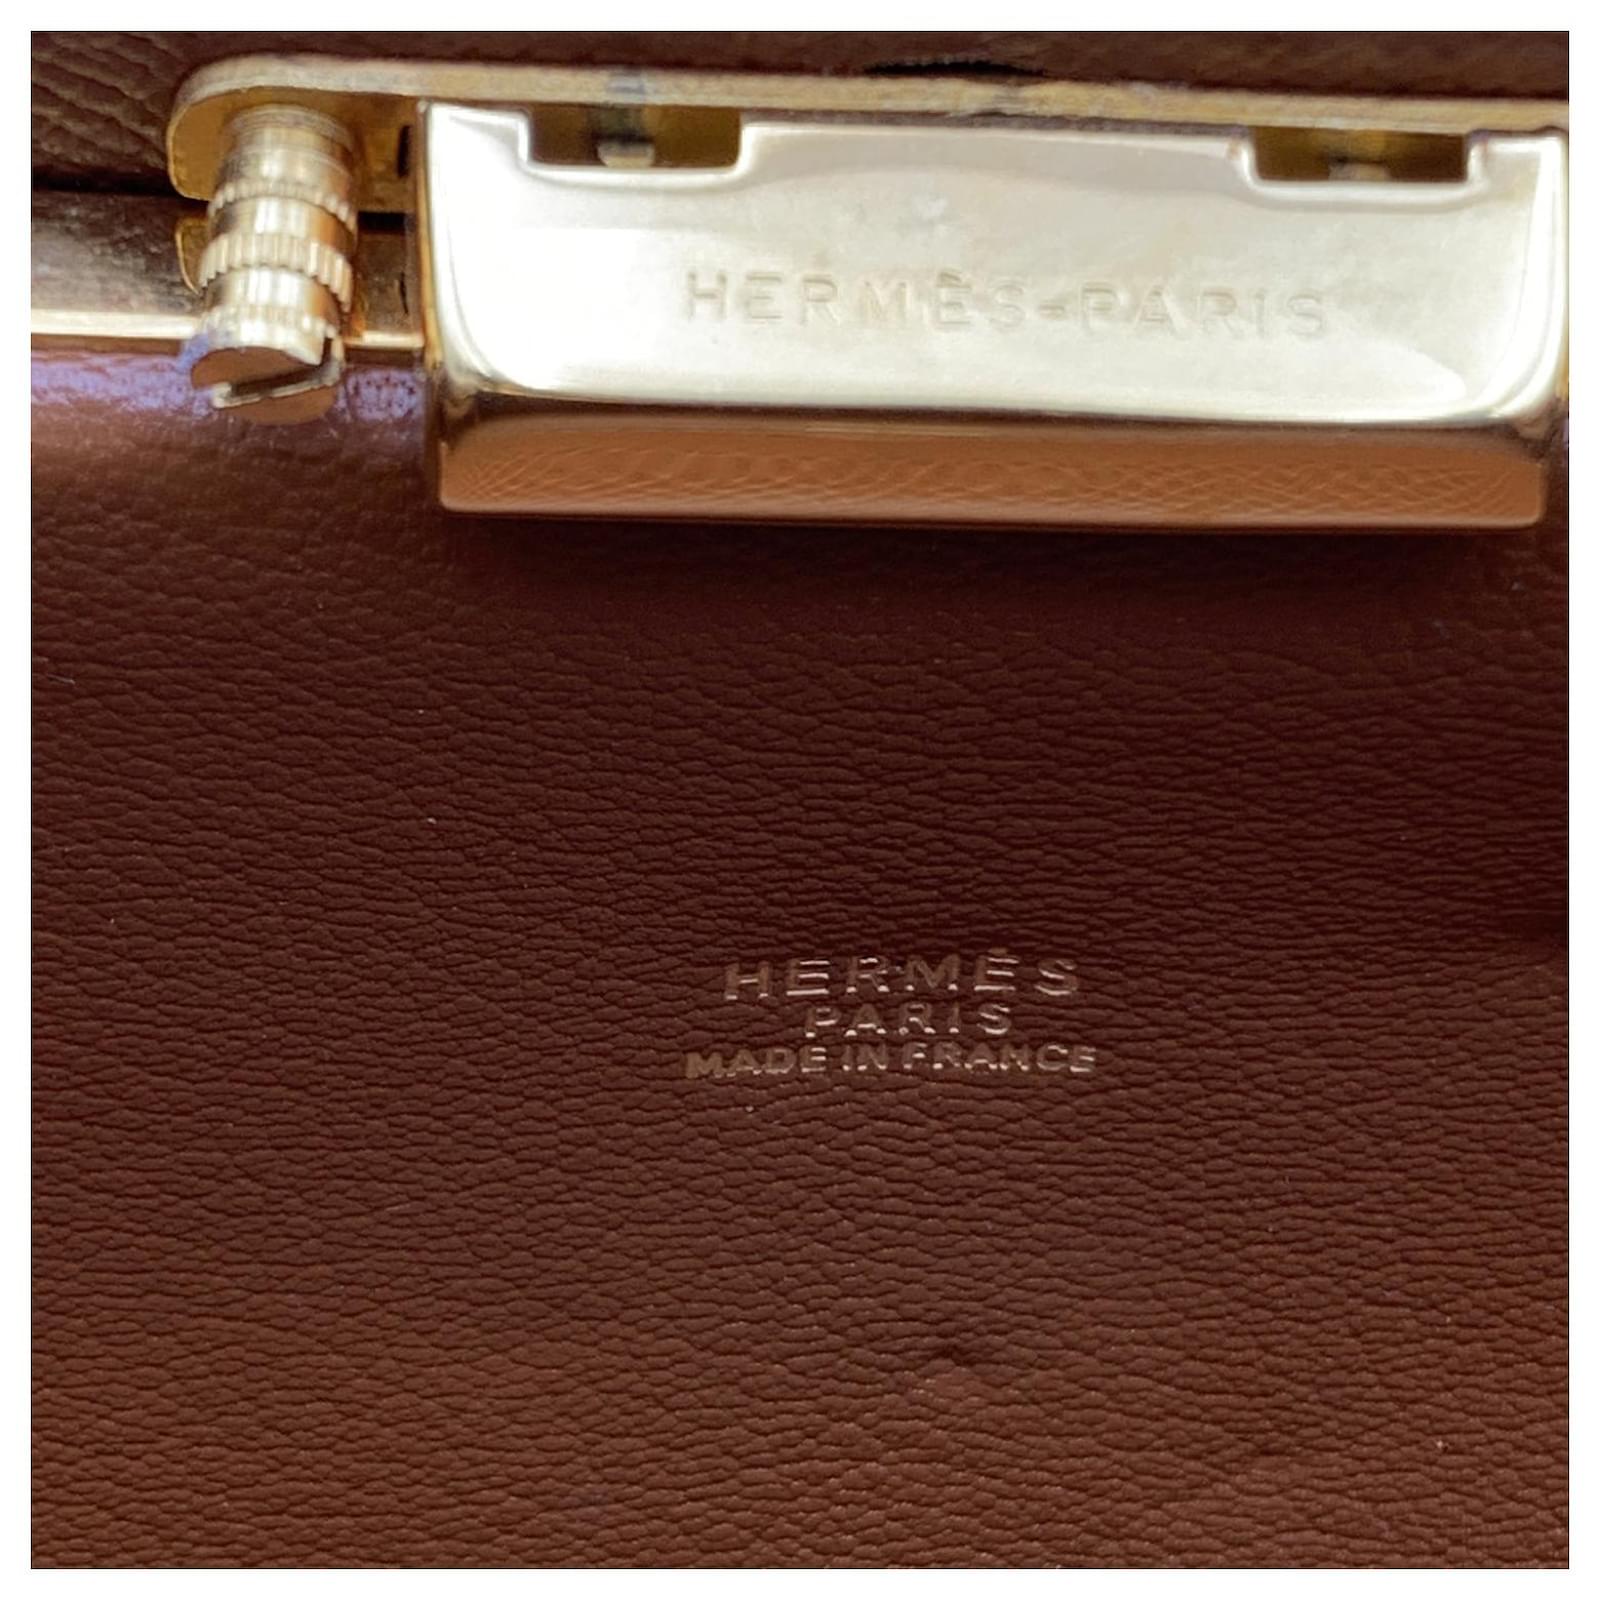 Hermès, Mallette, French